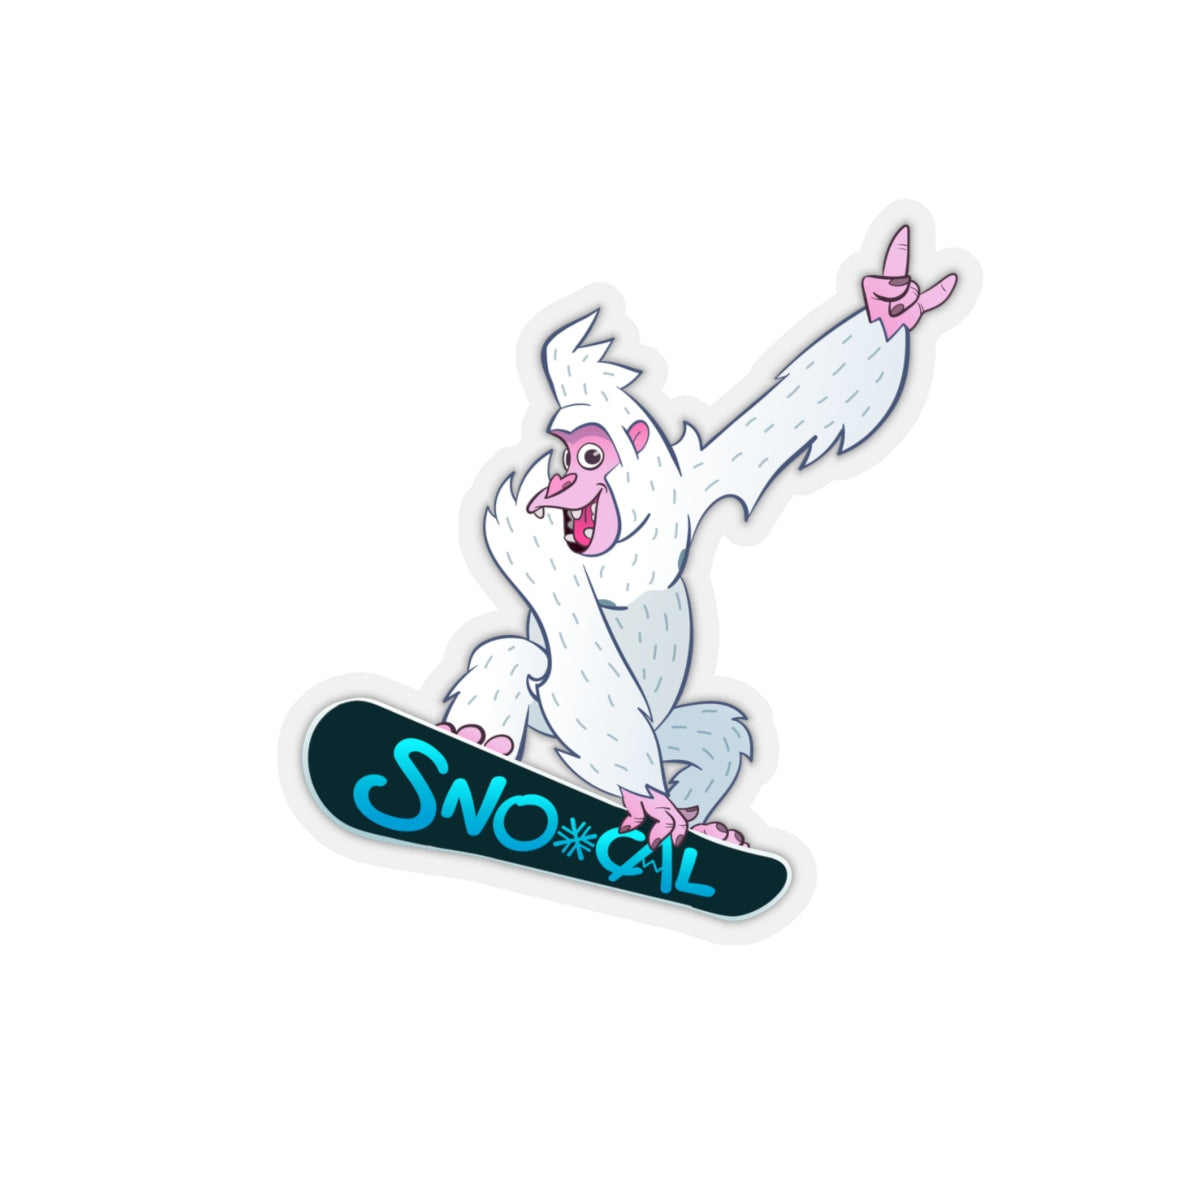 Snowboard Sticker 